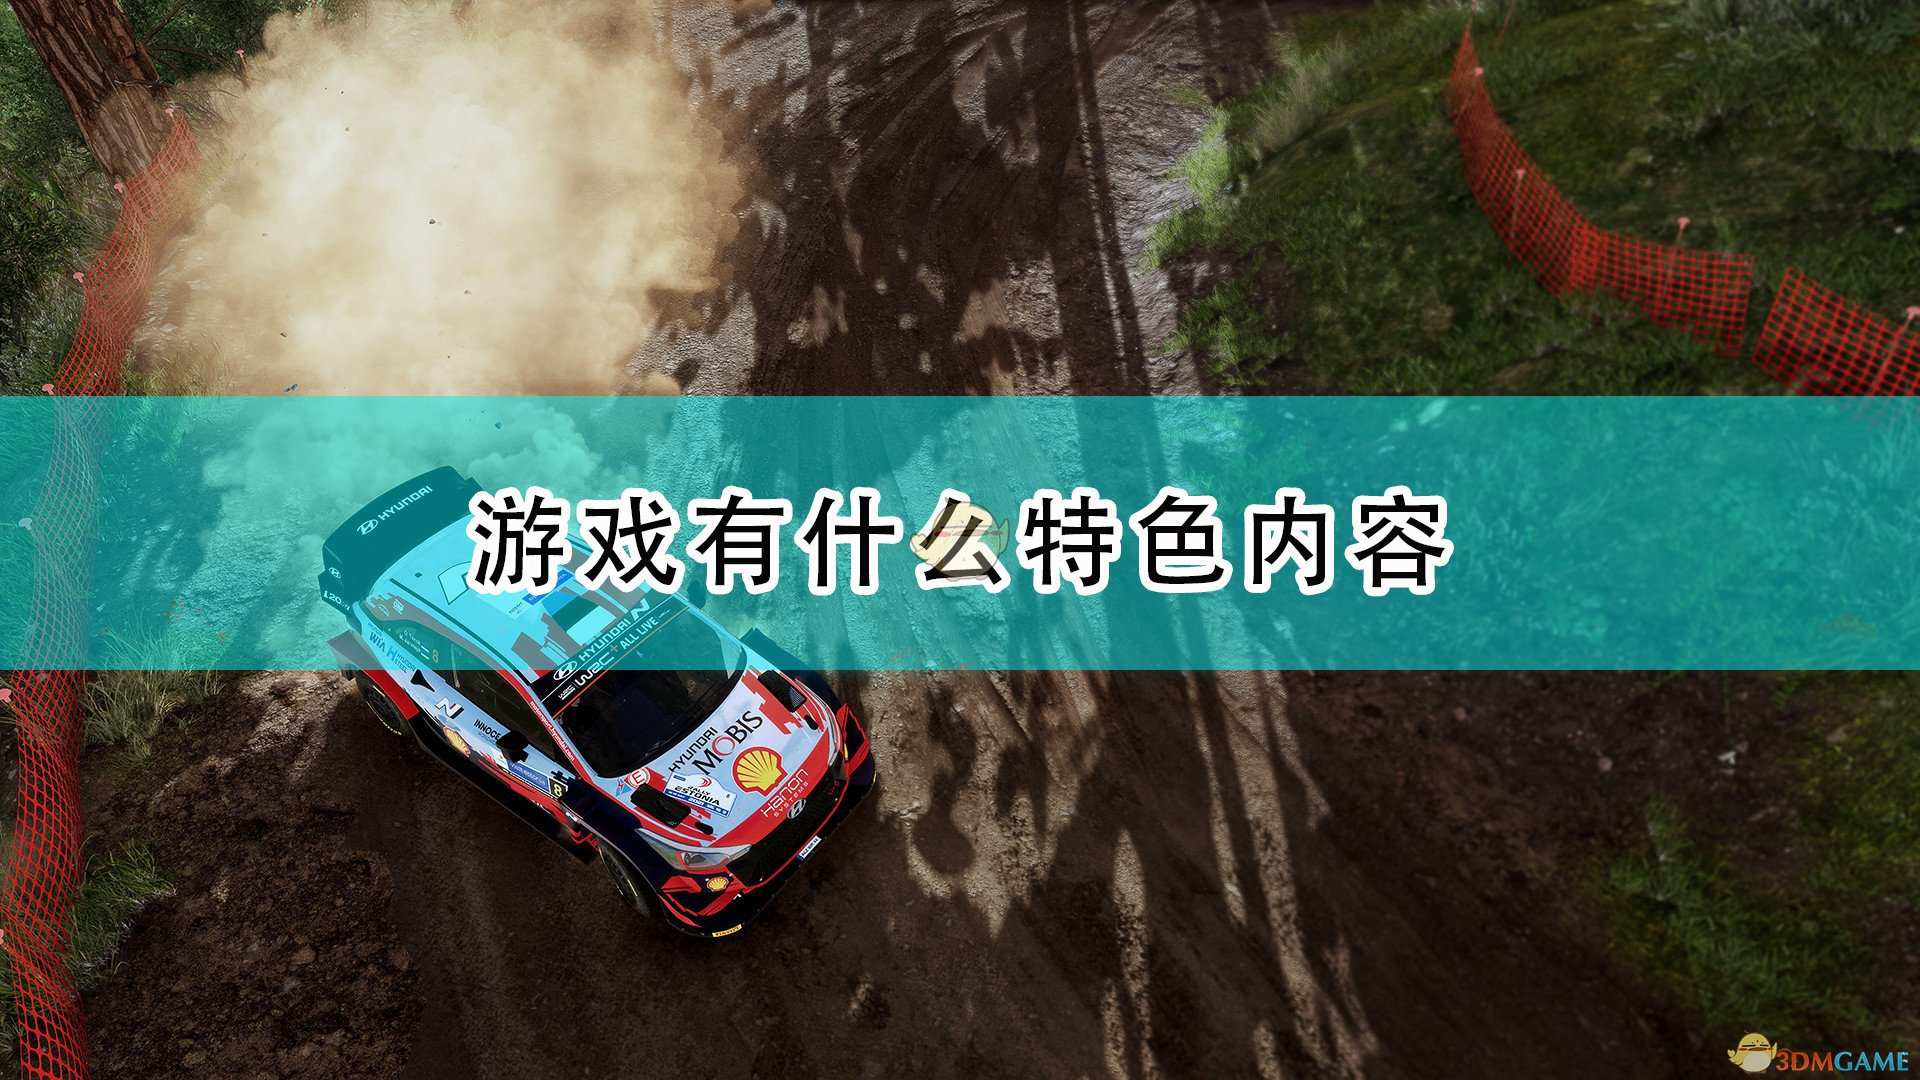 《世界汽车拉力锦标赛10》游戏特色内容介绍